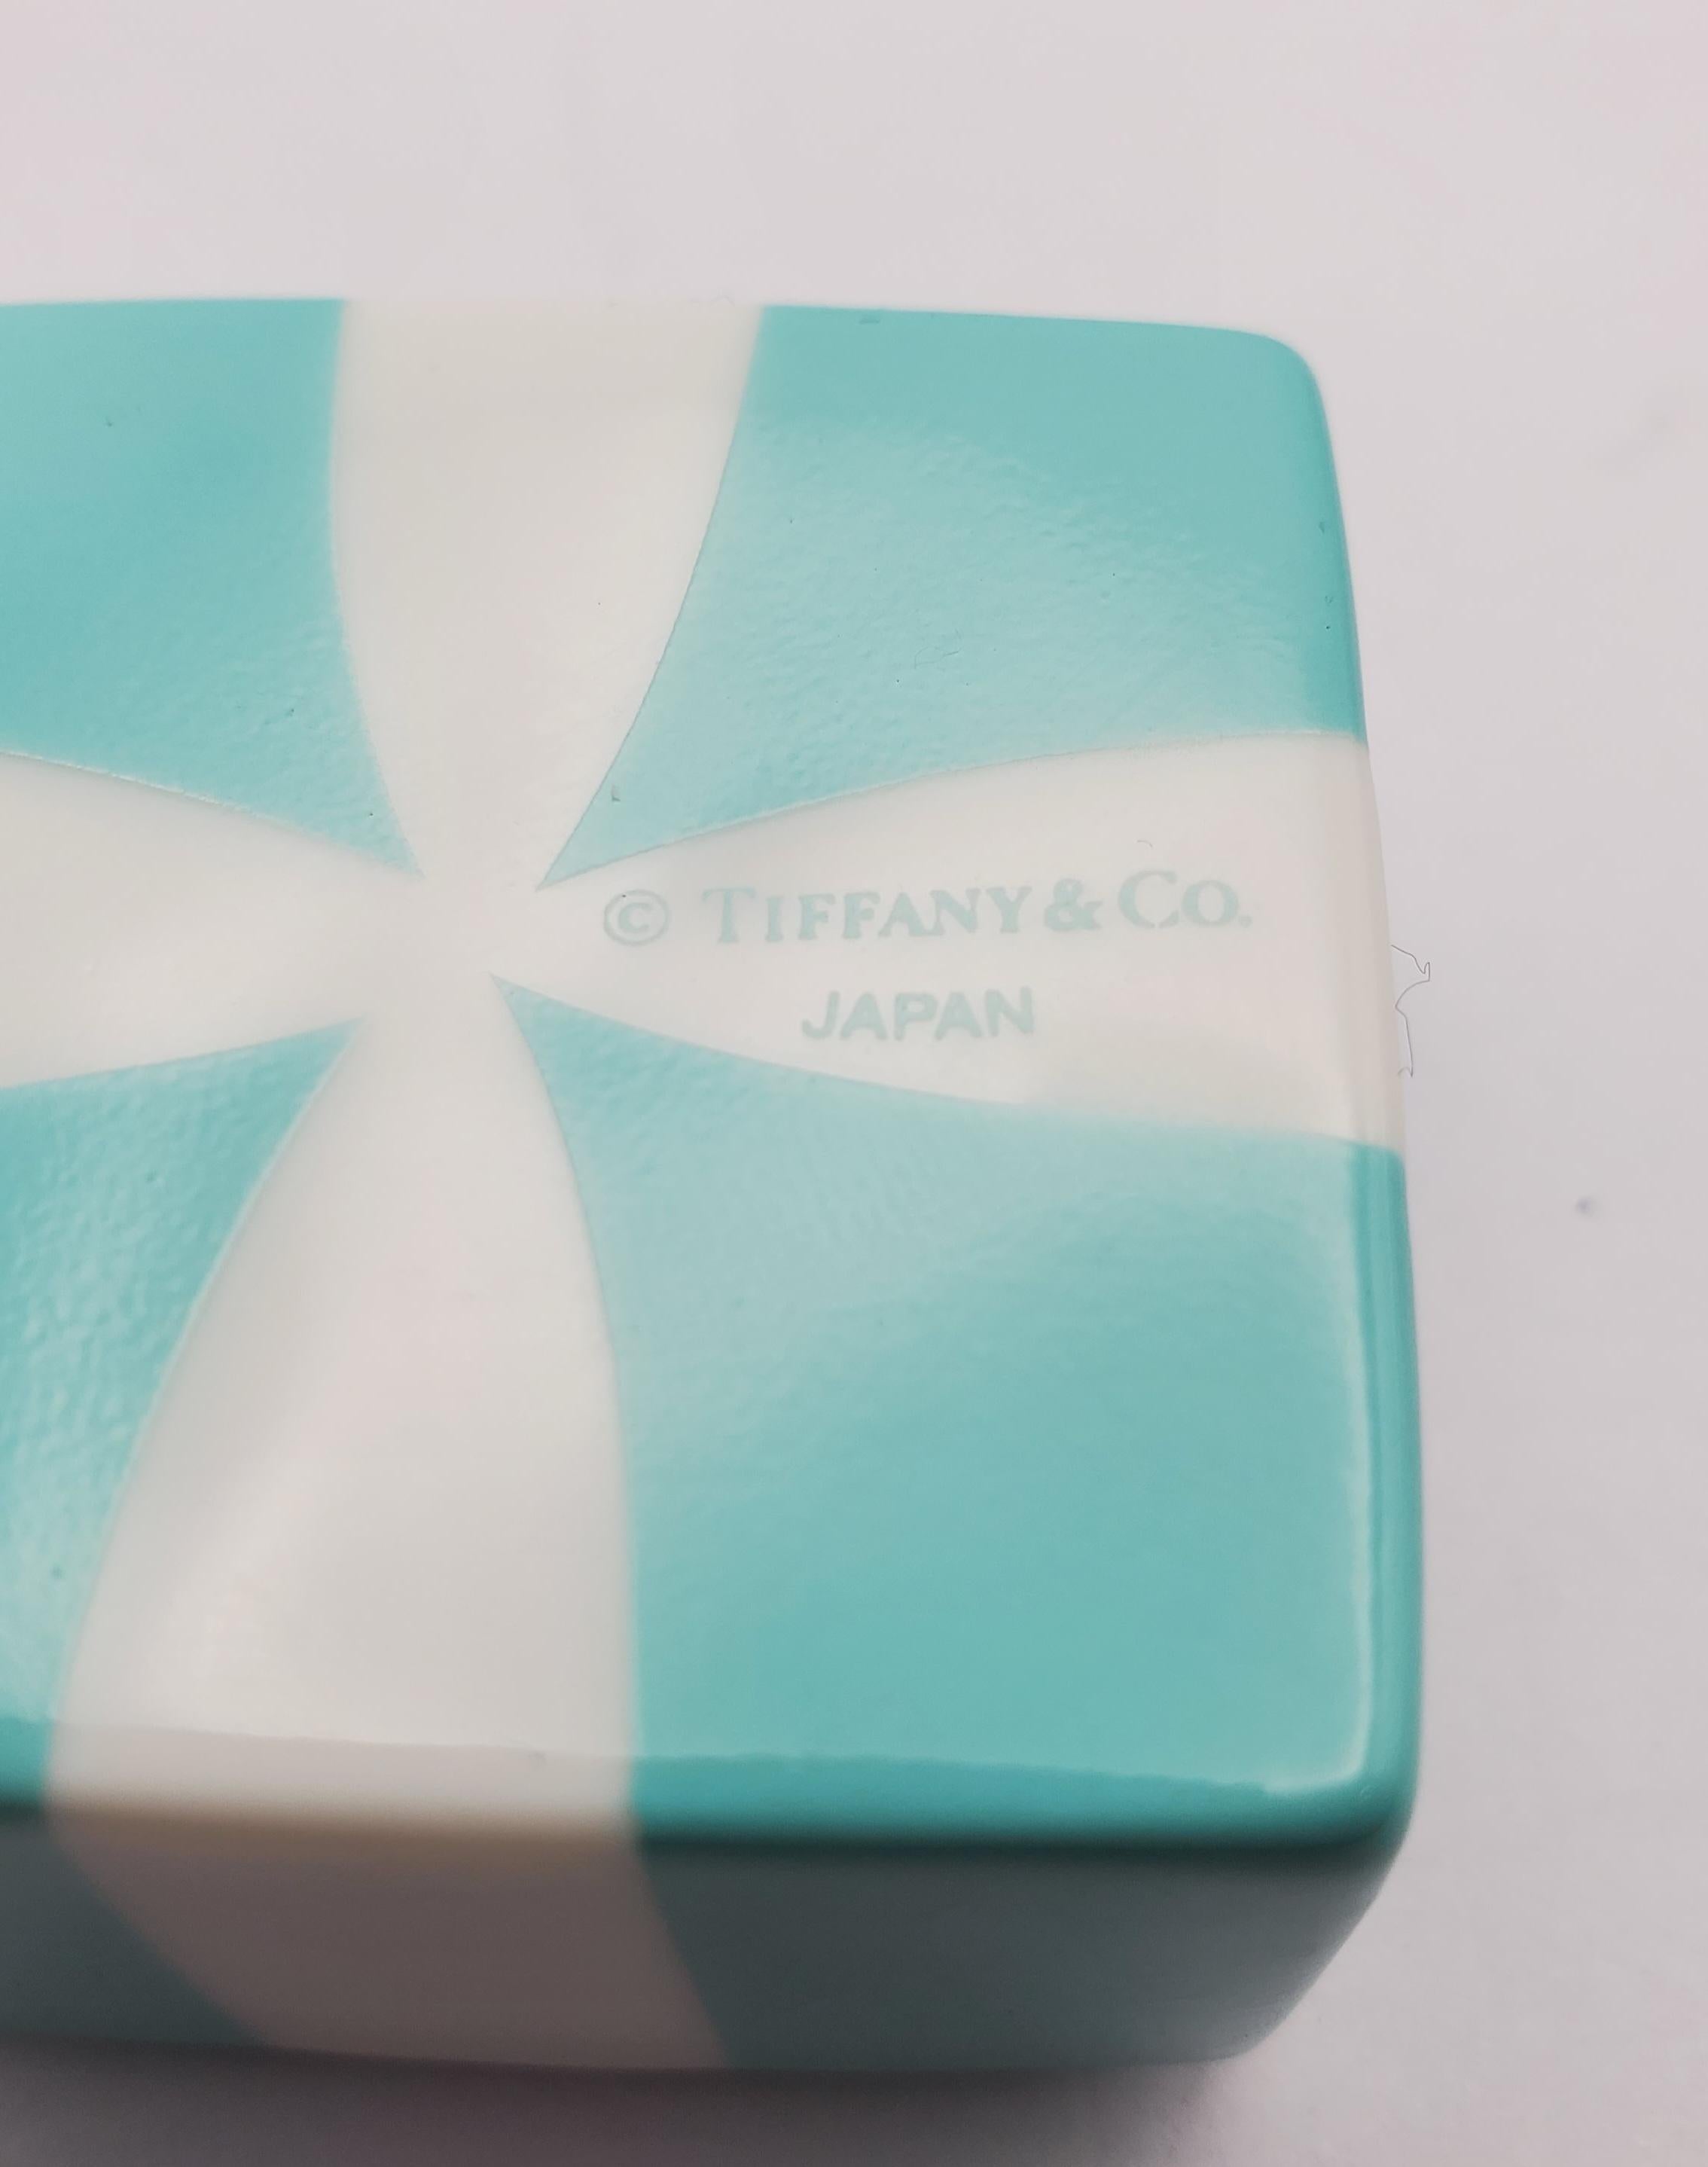 Adorable Vintage Porcelain Tiffany & Co. Japan Trinket Box  For Sale 2